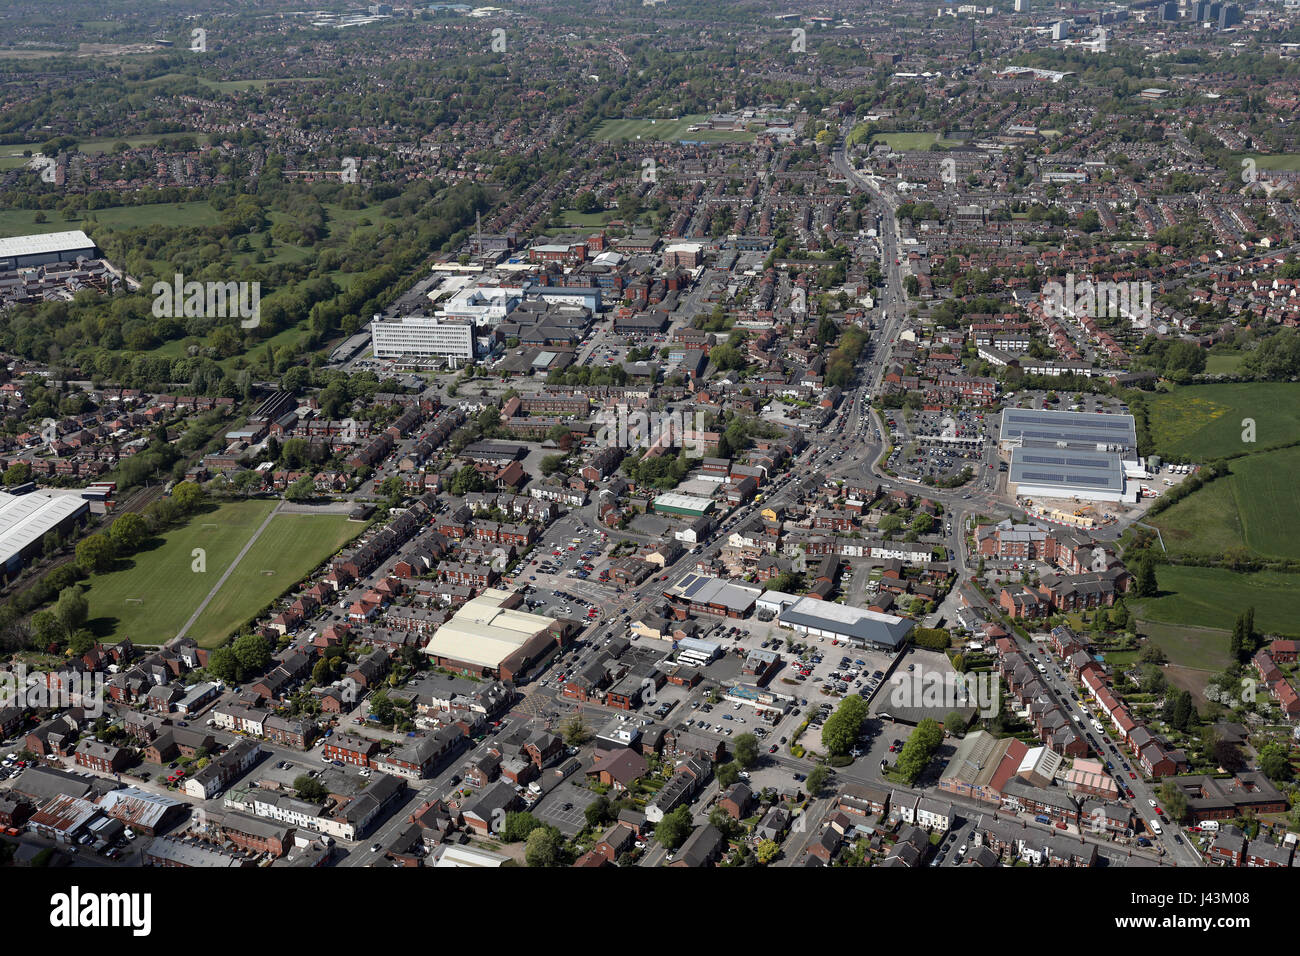 aerial view of Hazel Grove, Cheshire, UK Stock Photo